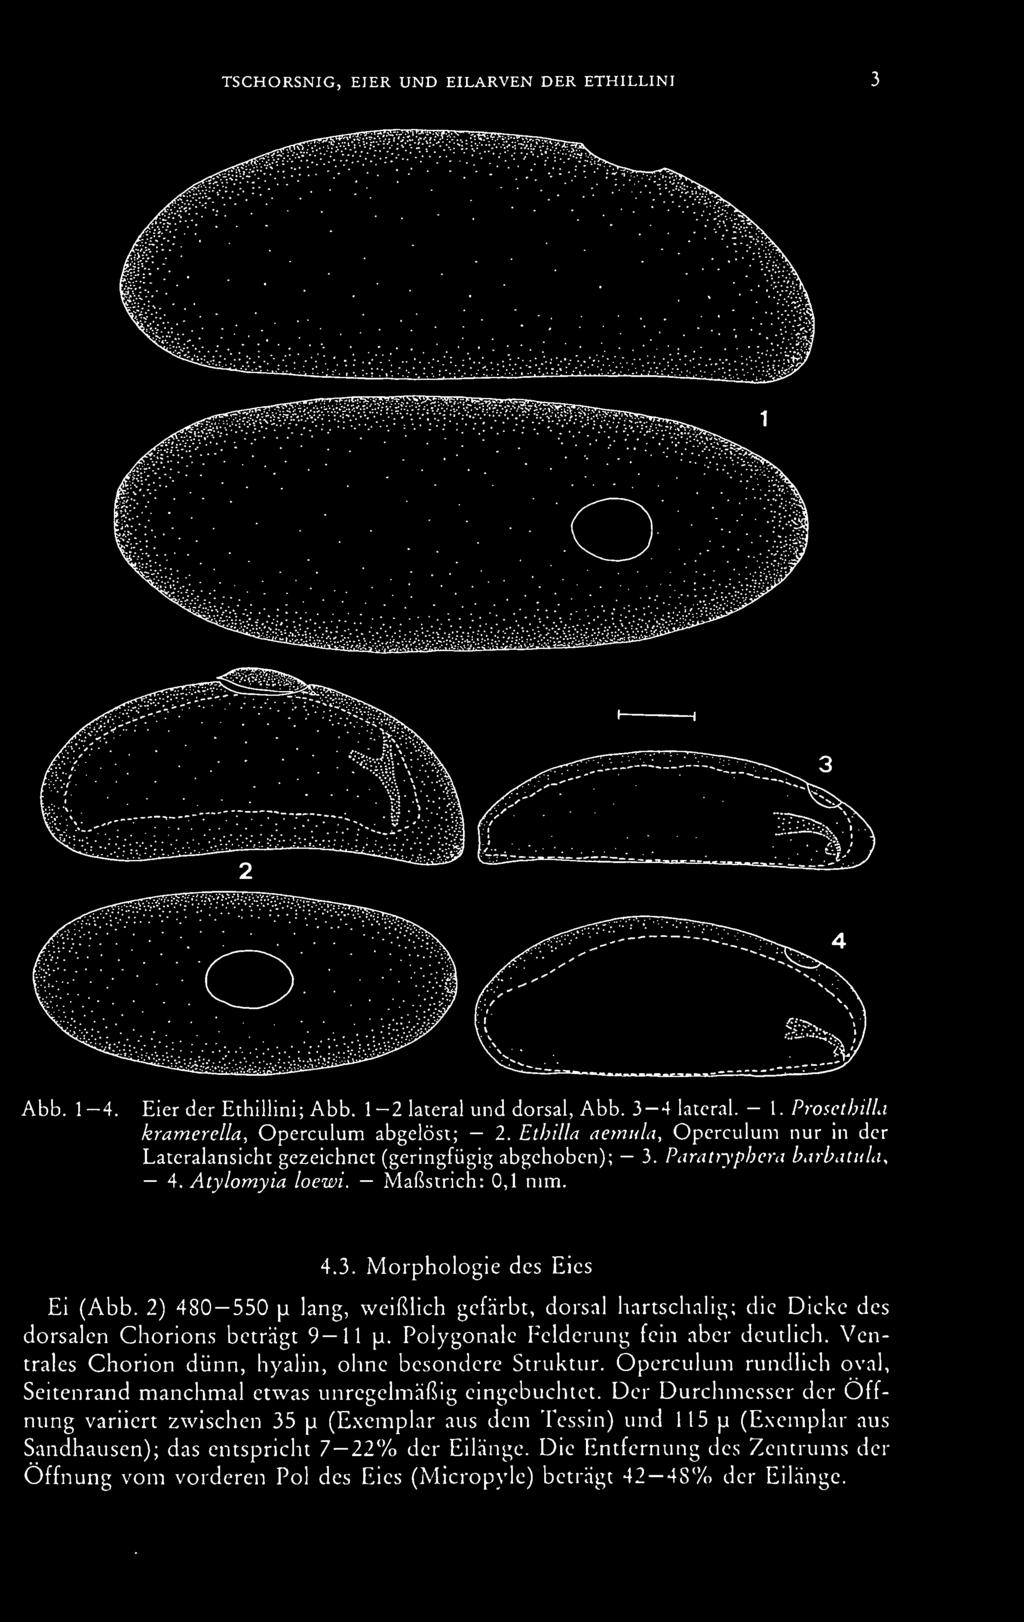 Ventrales Chorion dünn, hyalin, ohne besondere Struktur. Operculum rundlich oval, Seitenrand manchmal etwas unregelmäßig eingebuchtet.